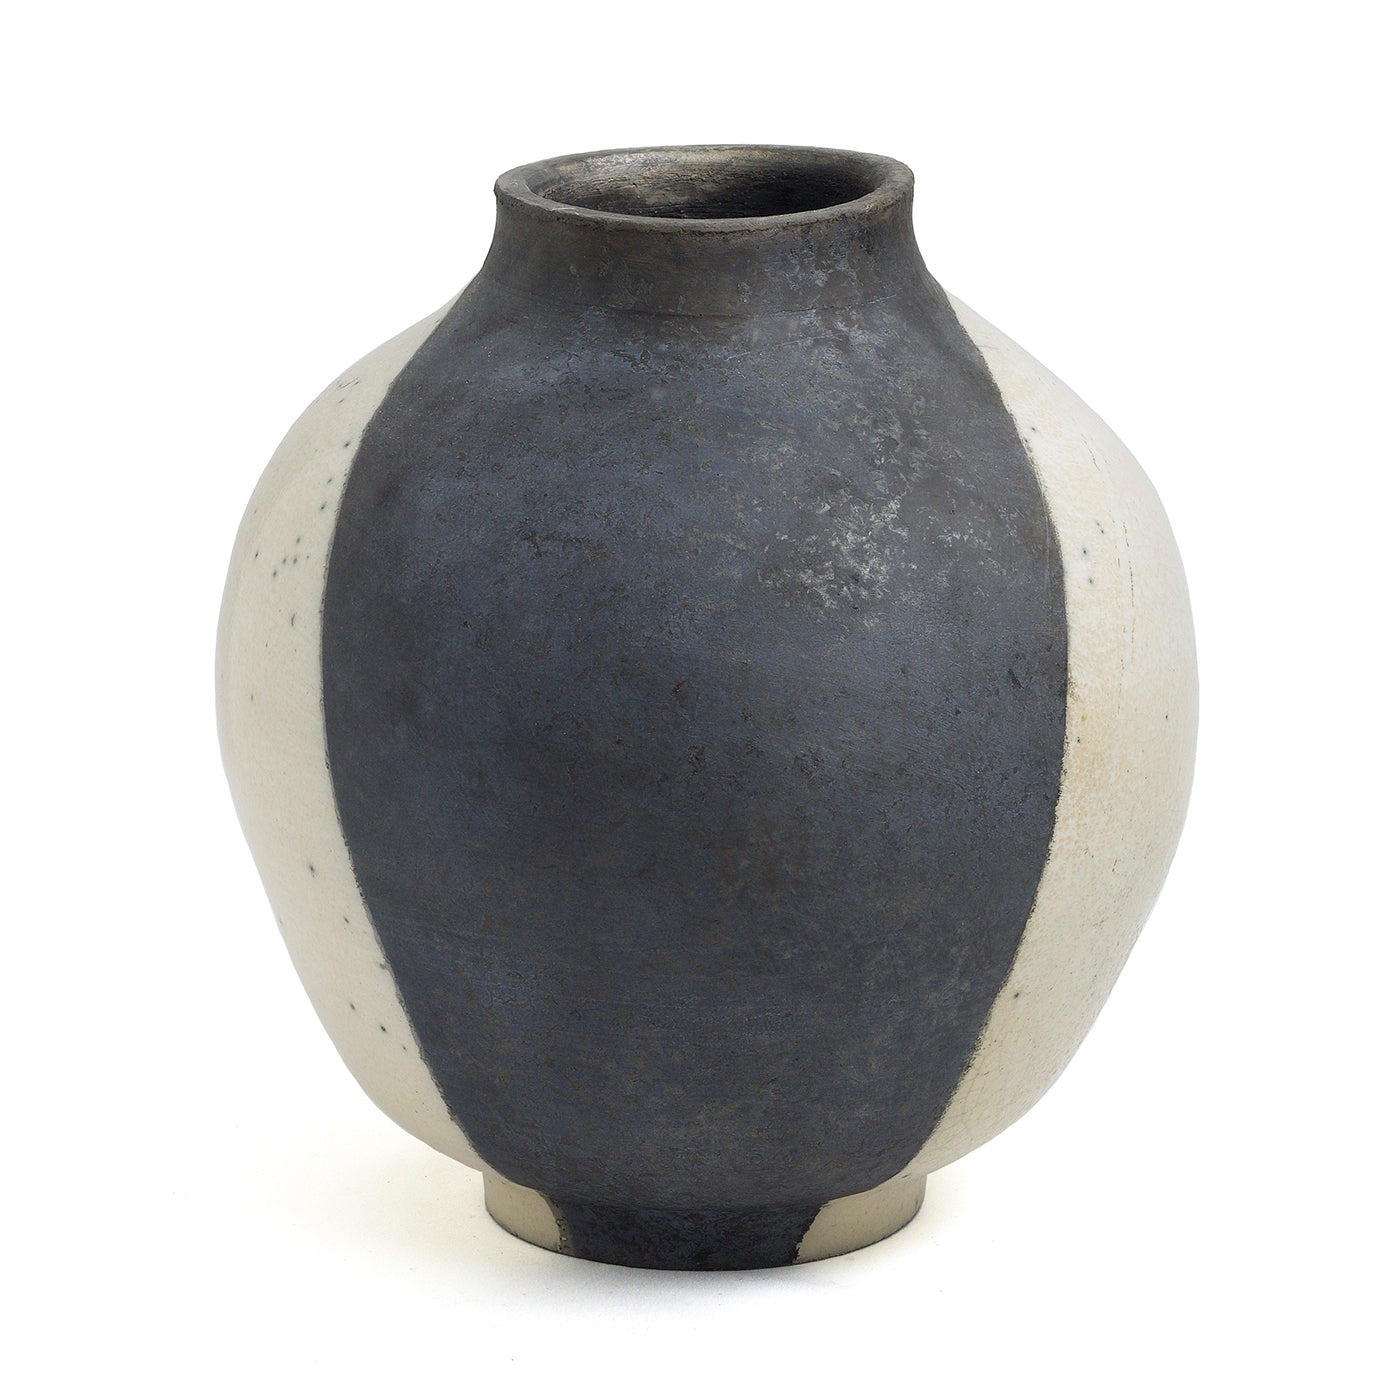 SHADOW SCULPTURE Vase #1 - Alternative view 5